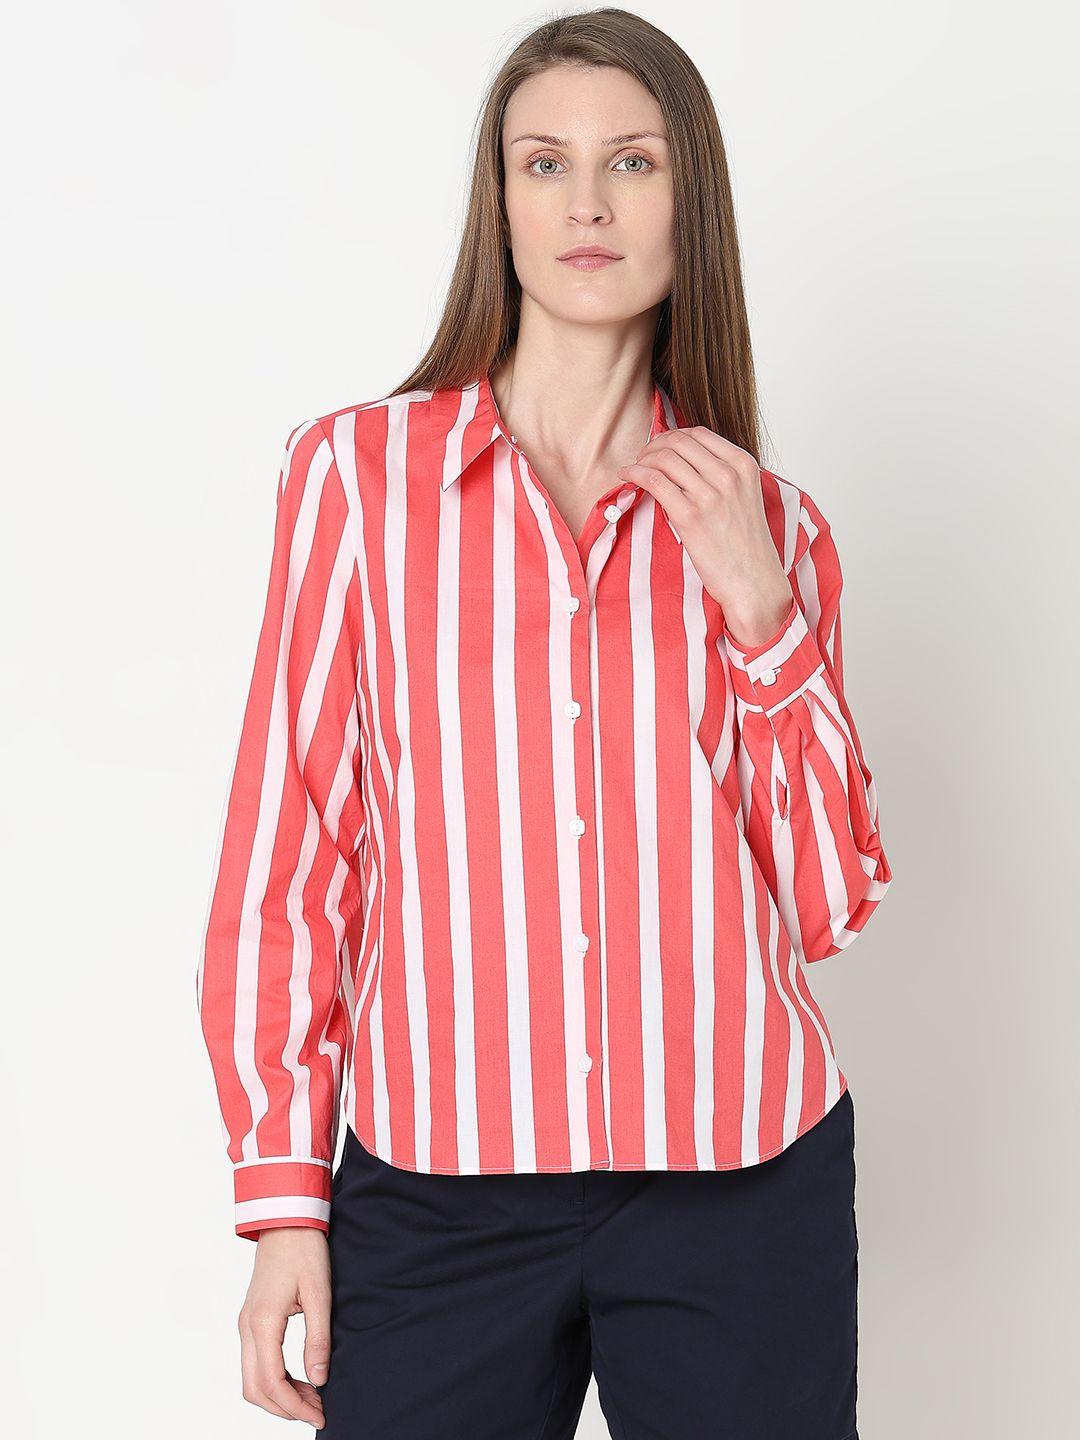 vero moda striped printed pure cotton casual shirt